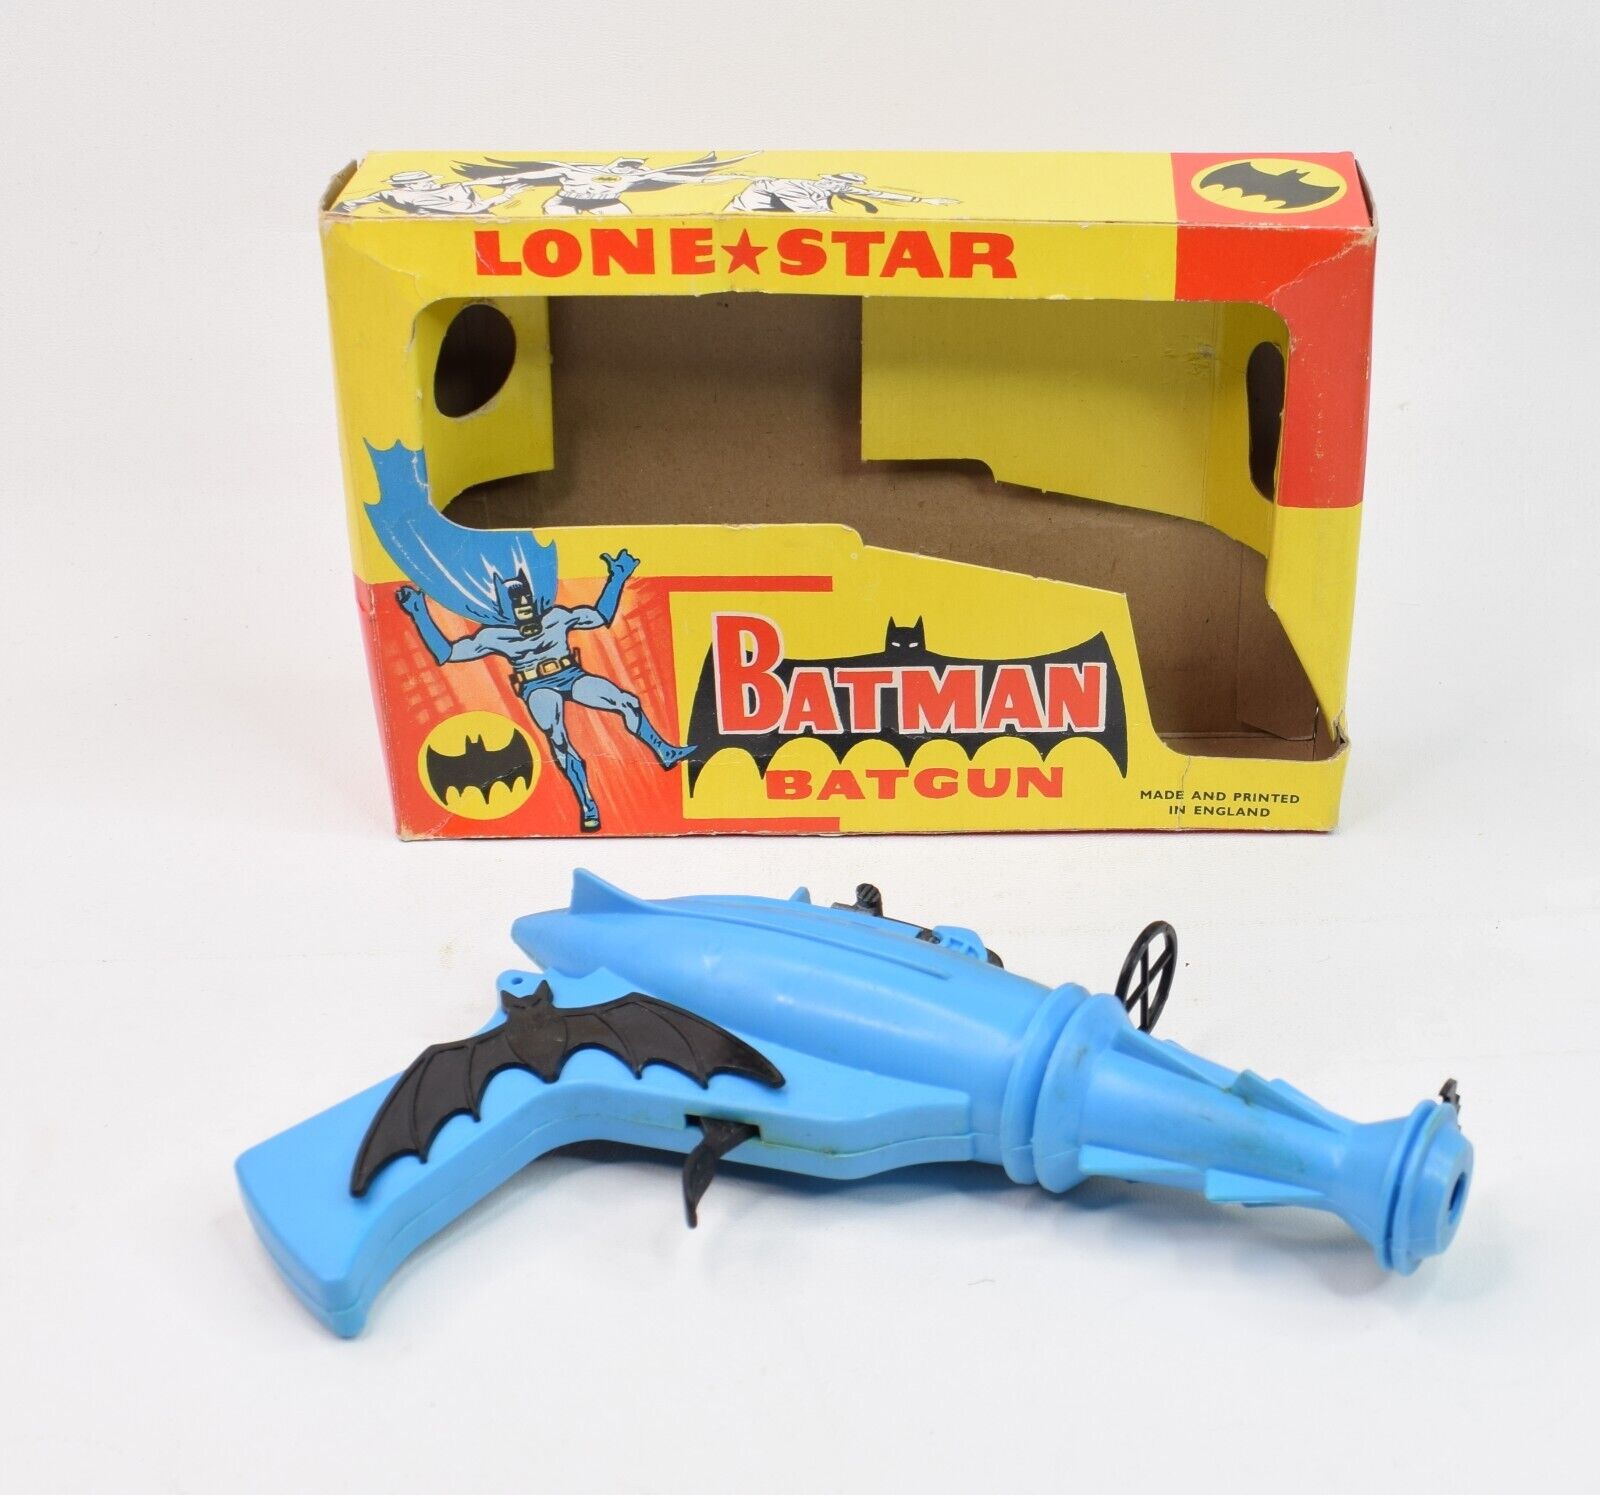 Lone Star No.1381- Batman - Batgun - 10 shot Cap repeater - 1966 